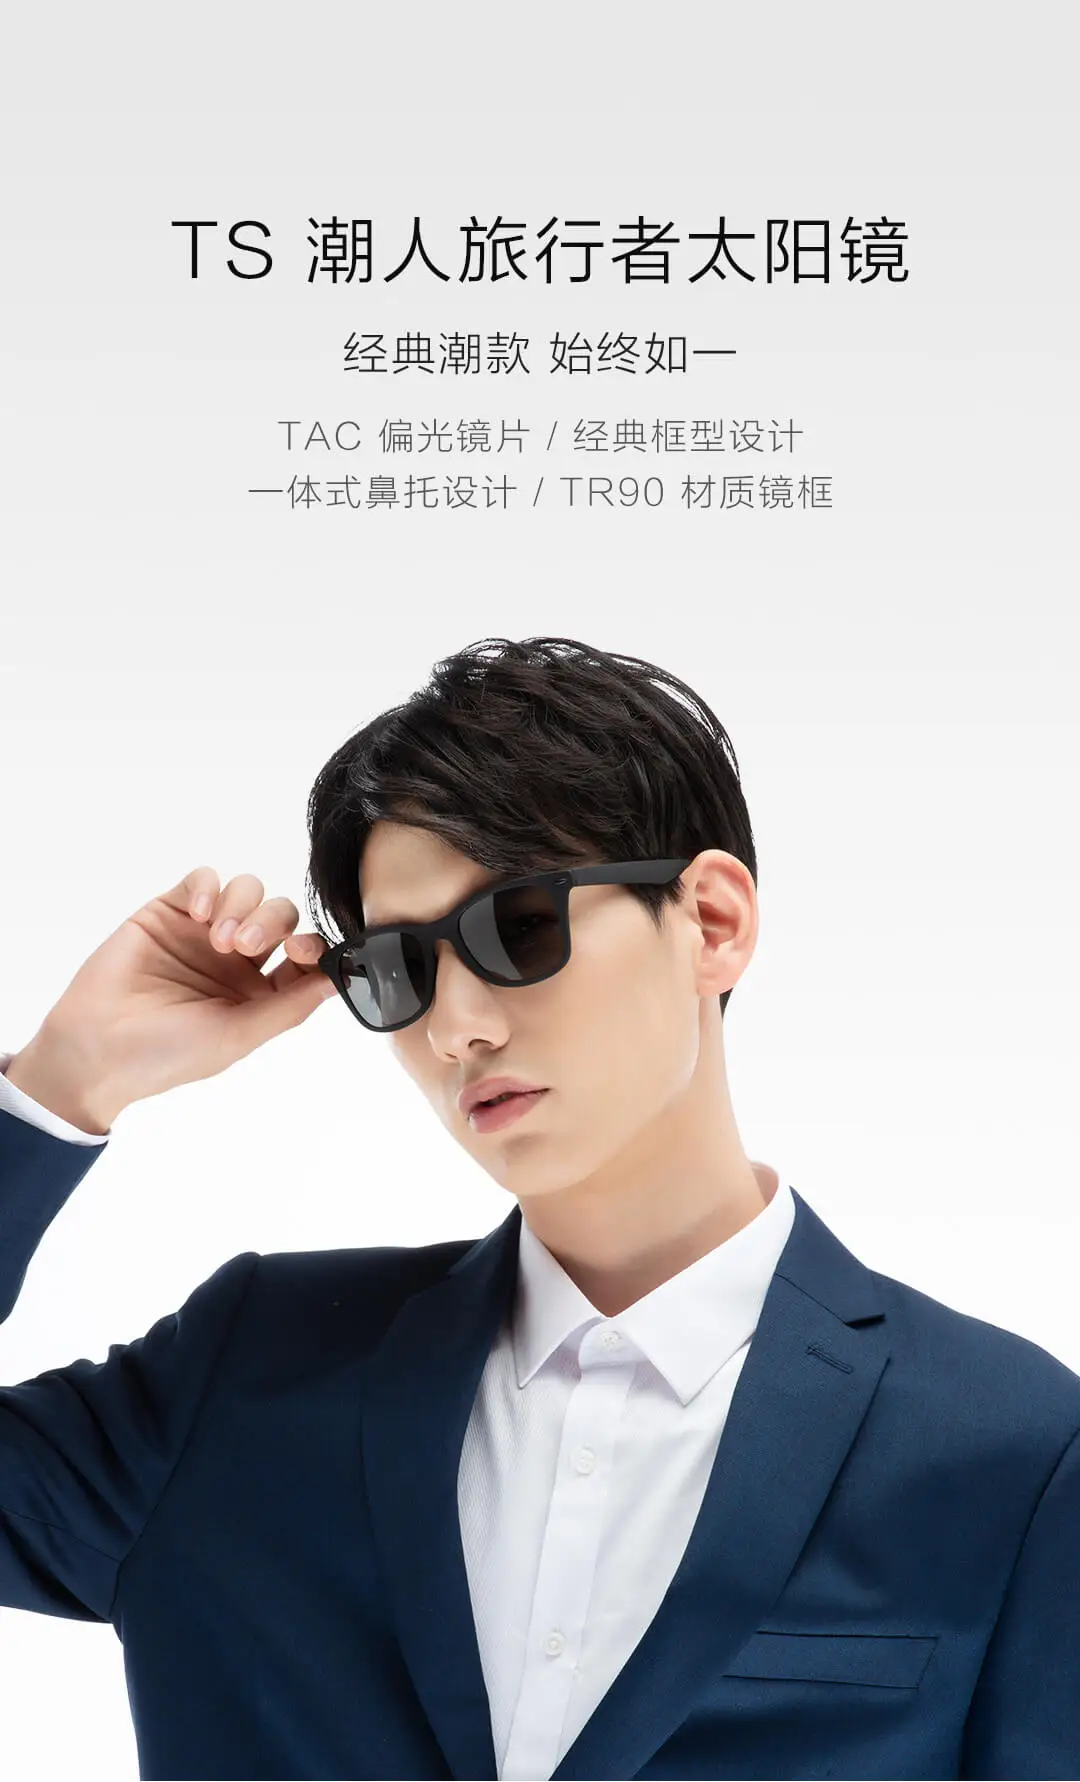 Xiaomi Youpin TS Tidal Traveler солнцезащитные очки STR004-0120 TAC поляризационные линзы TR90 Frame 3C Mijia